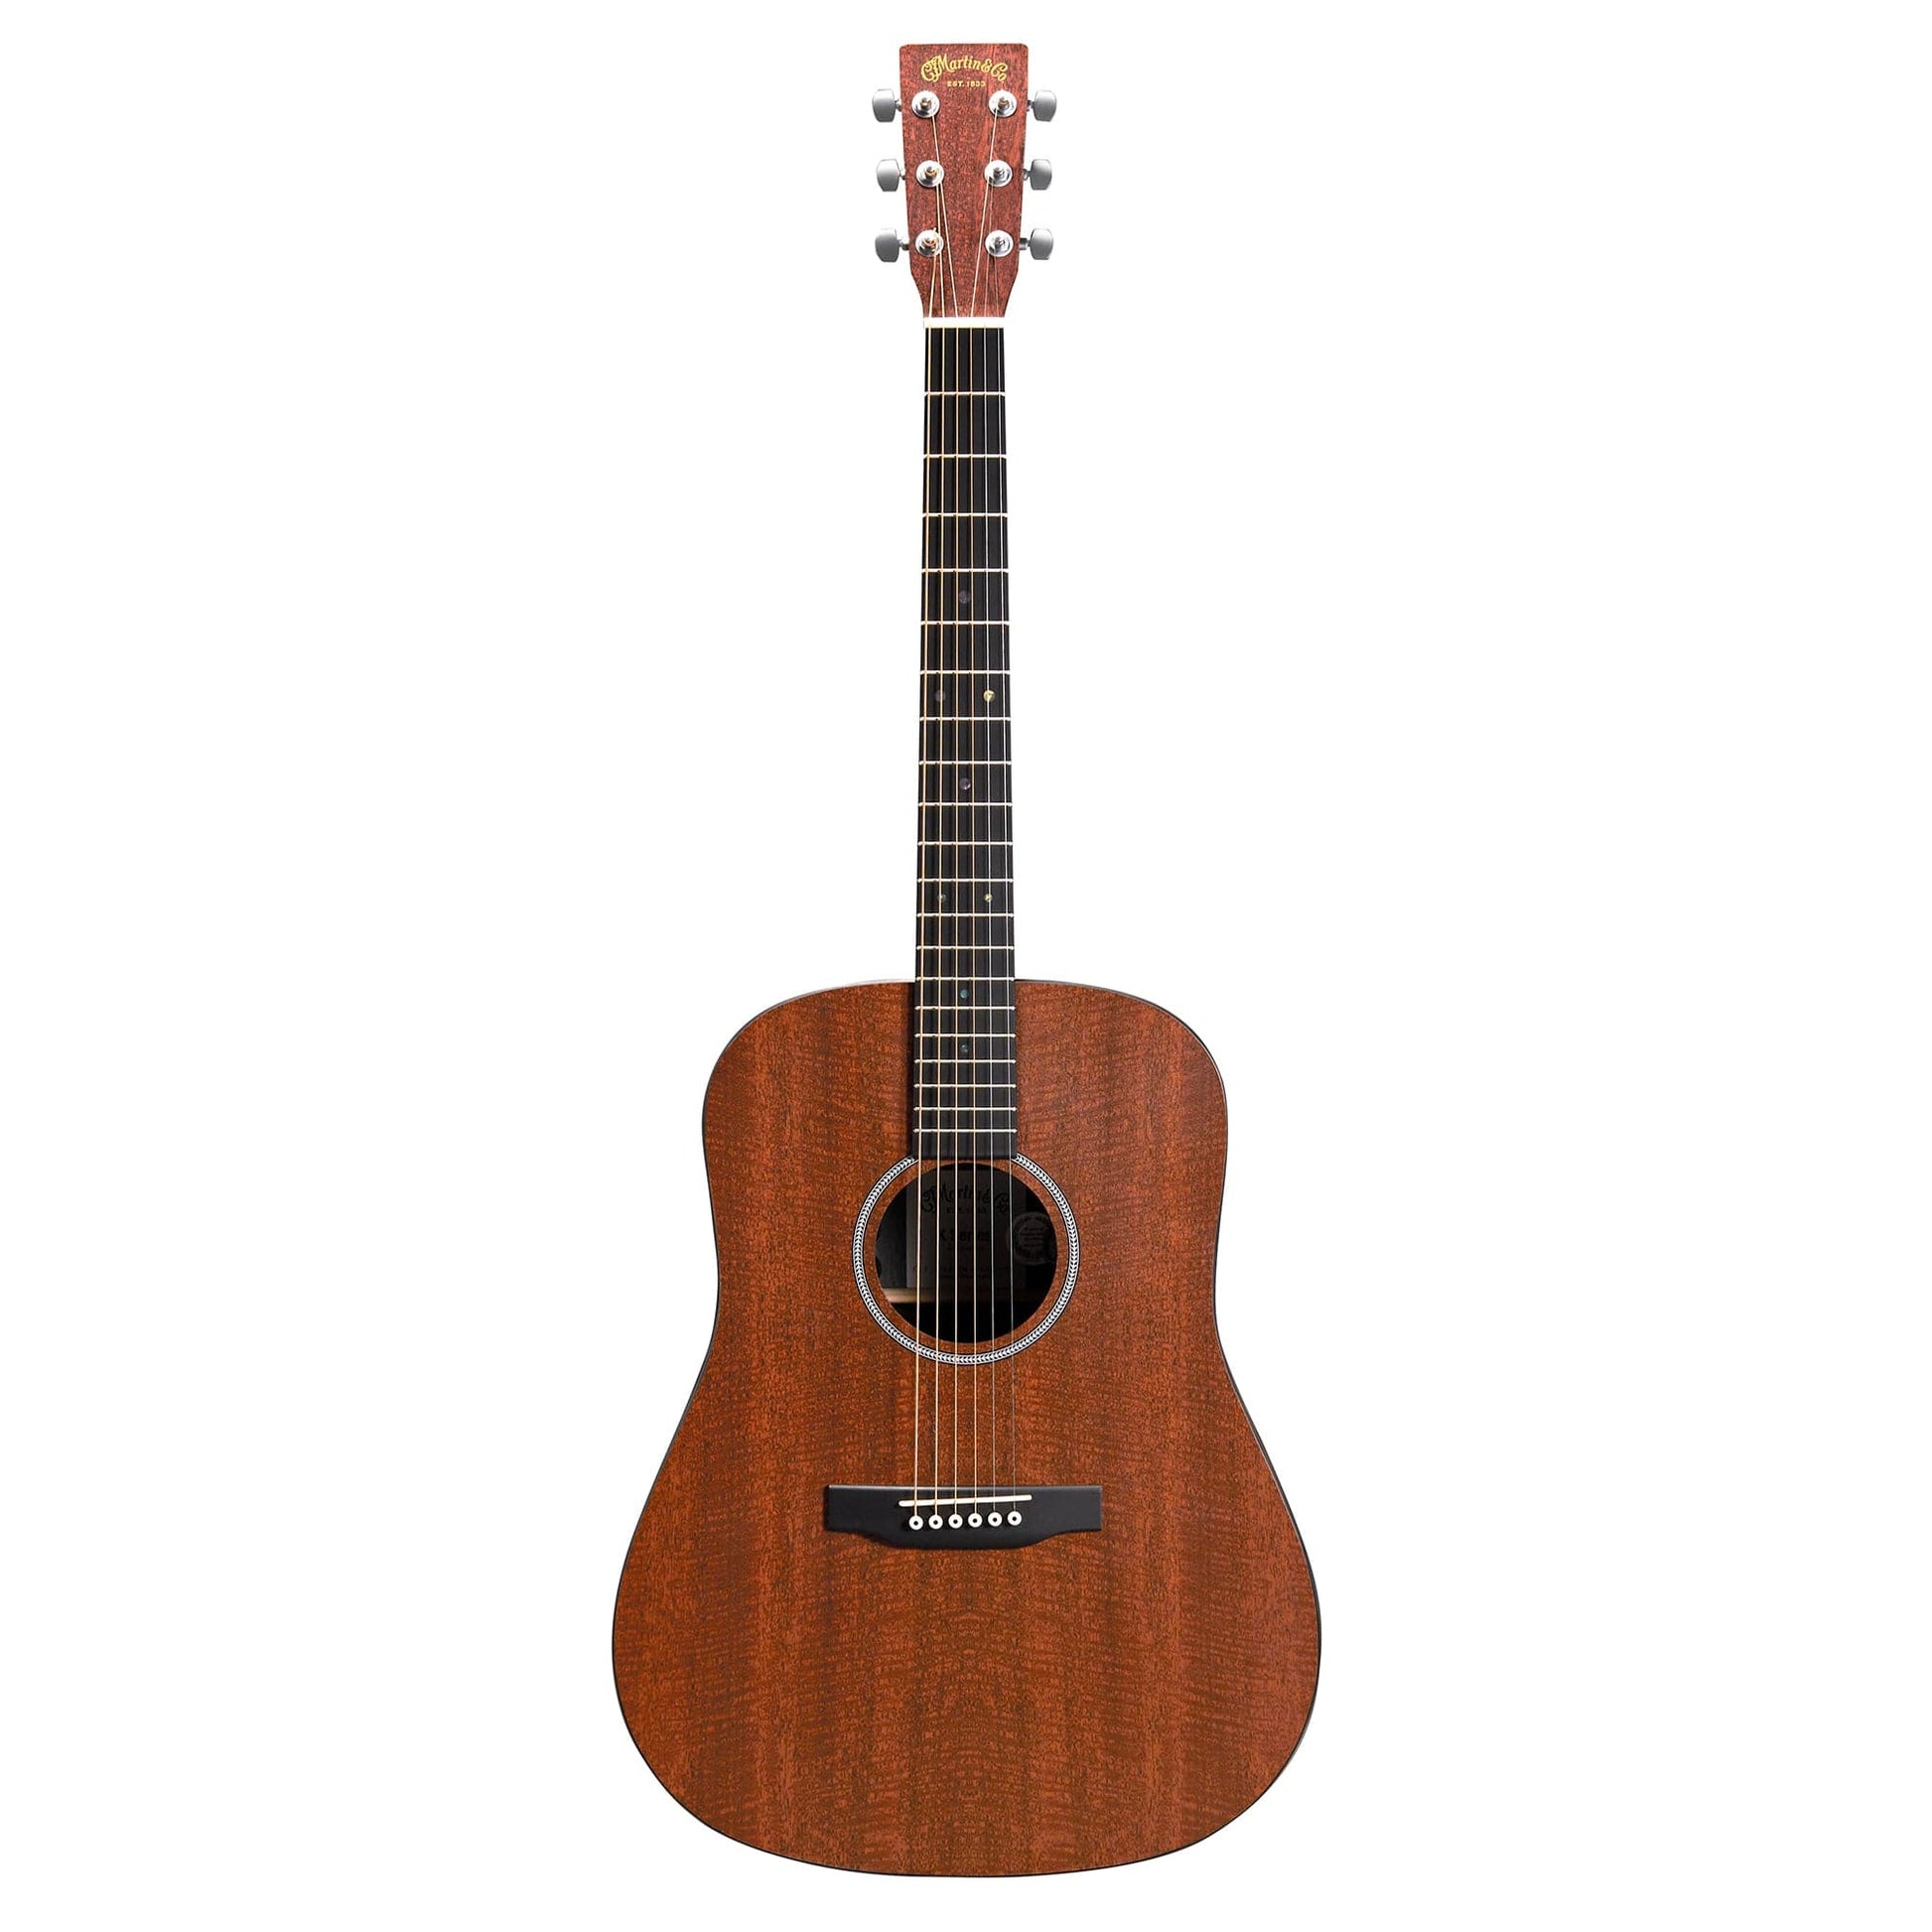 Martin D-X1E Figured Mahogany HPL/Figured Mahogany HPL Natural Acoustic Guitars / Dreadnought